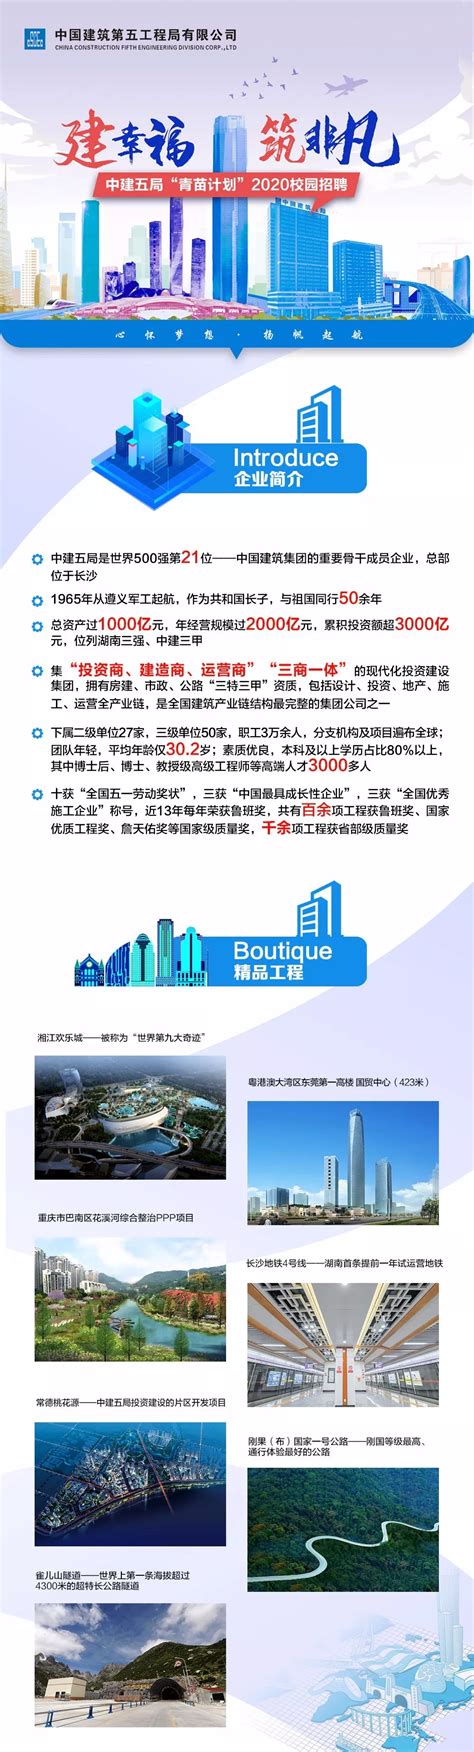 南京市建设工程监理企业信用管理手册申请操作指南_文档之家